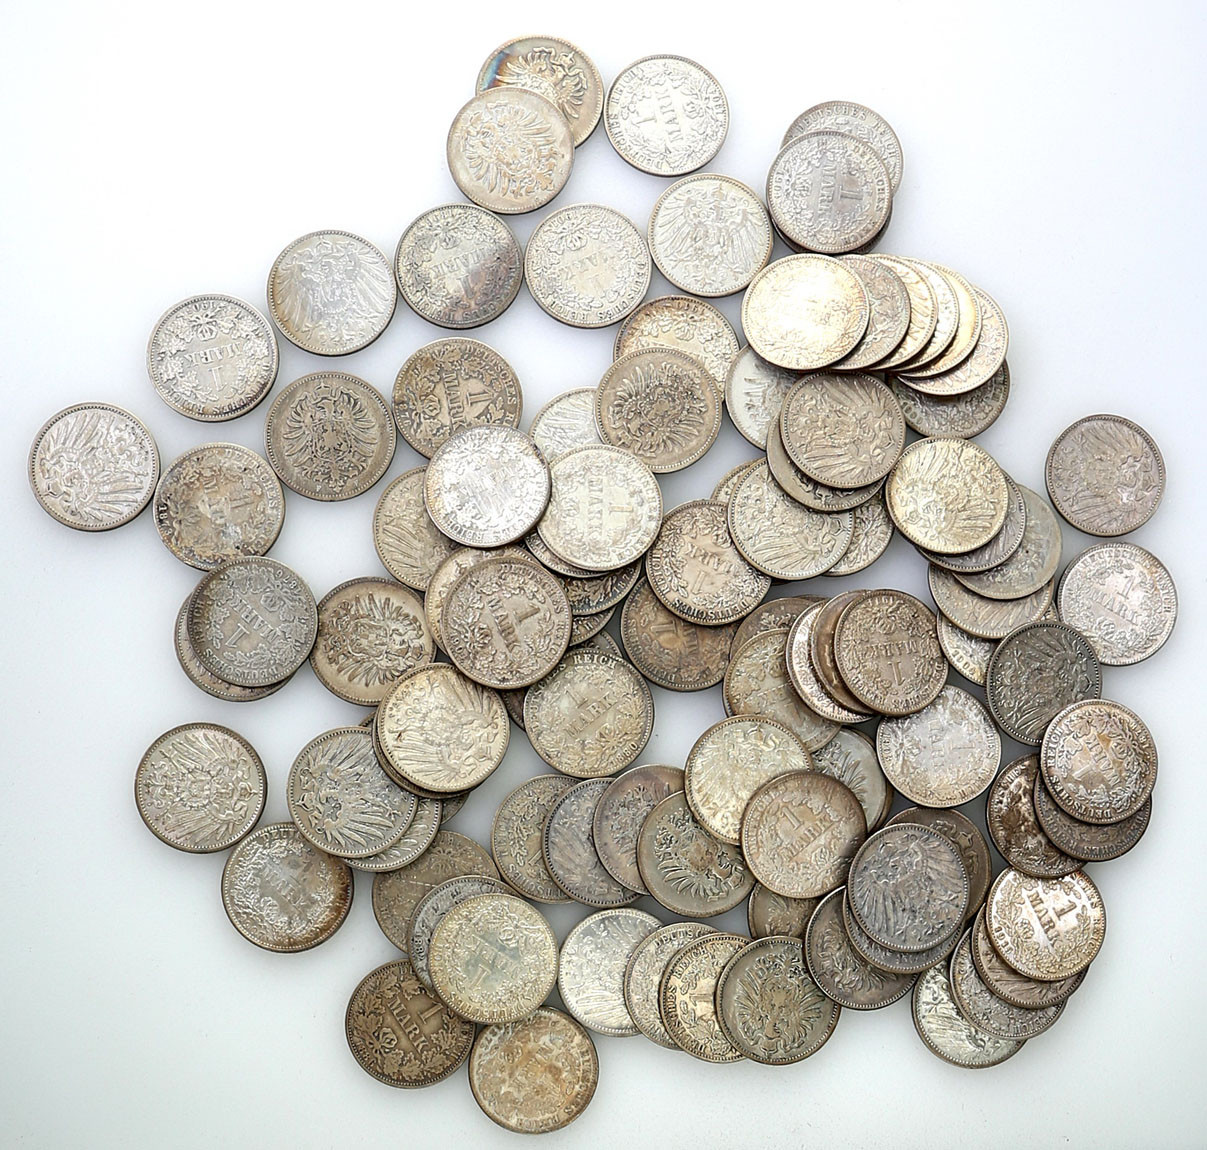 Niemcy, Kaiserreich. 1 marka, zestaw 100 monet